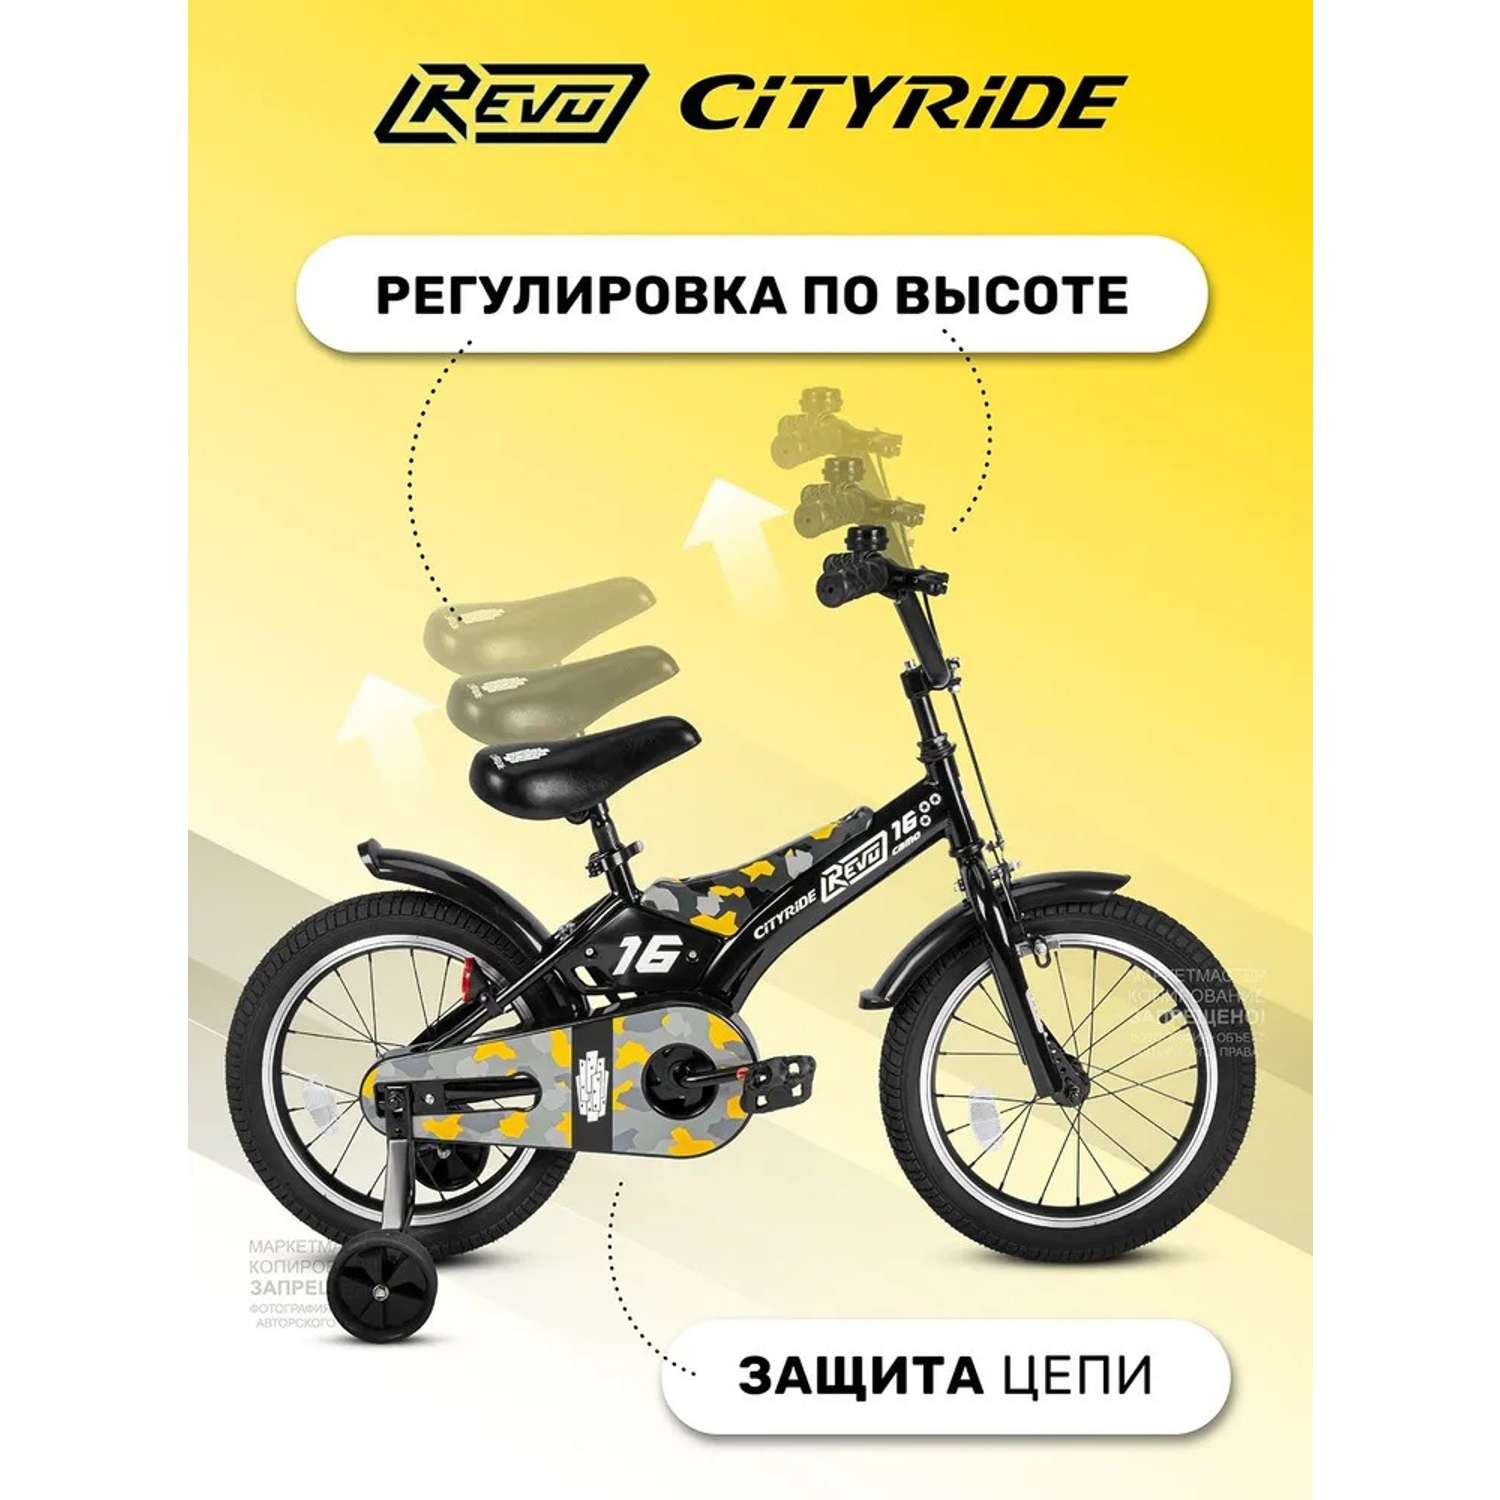 Детский велосипед CITYRIDE Двухколесный Cityride REVO Рама сталь Кожух цепи 100% Диски алюминий 16 Втулки сталь - фото 2